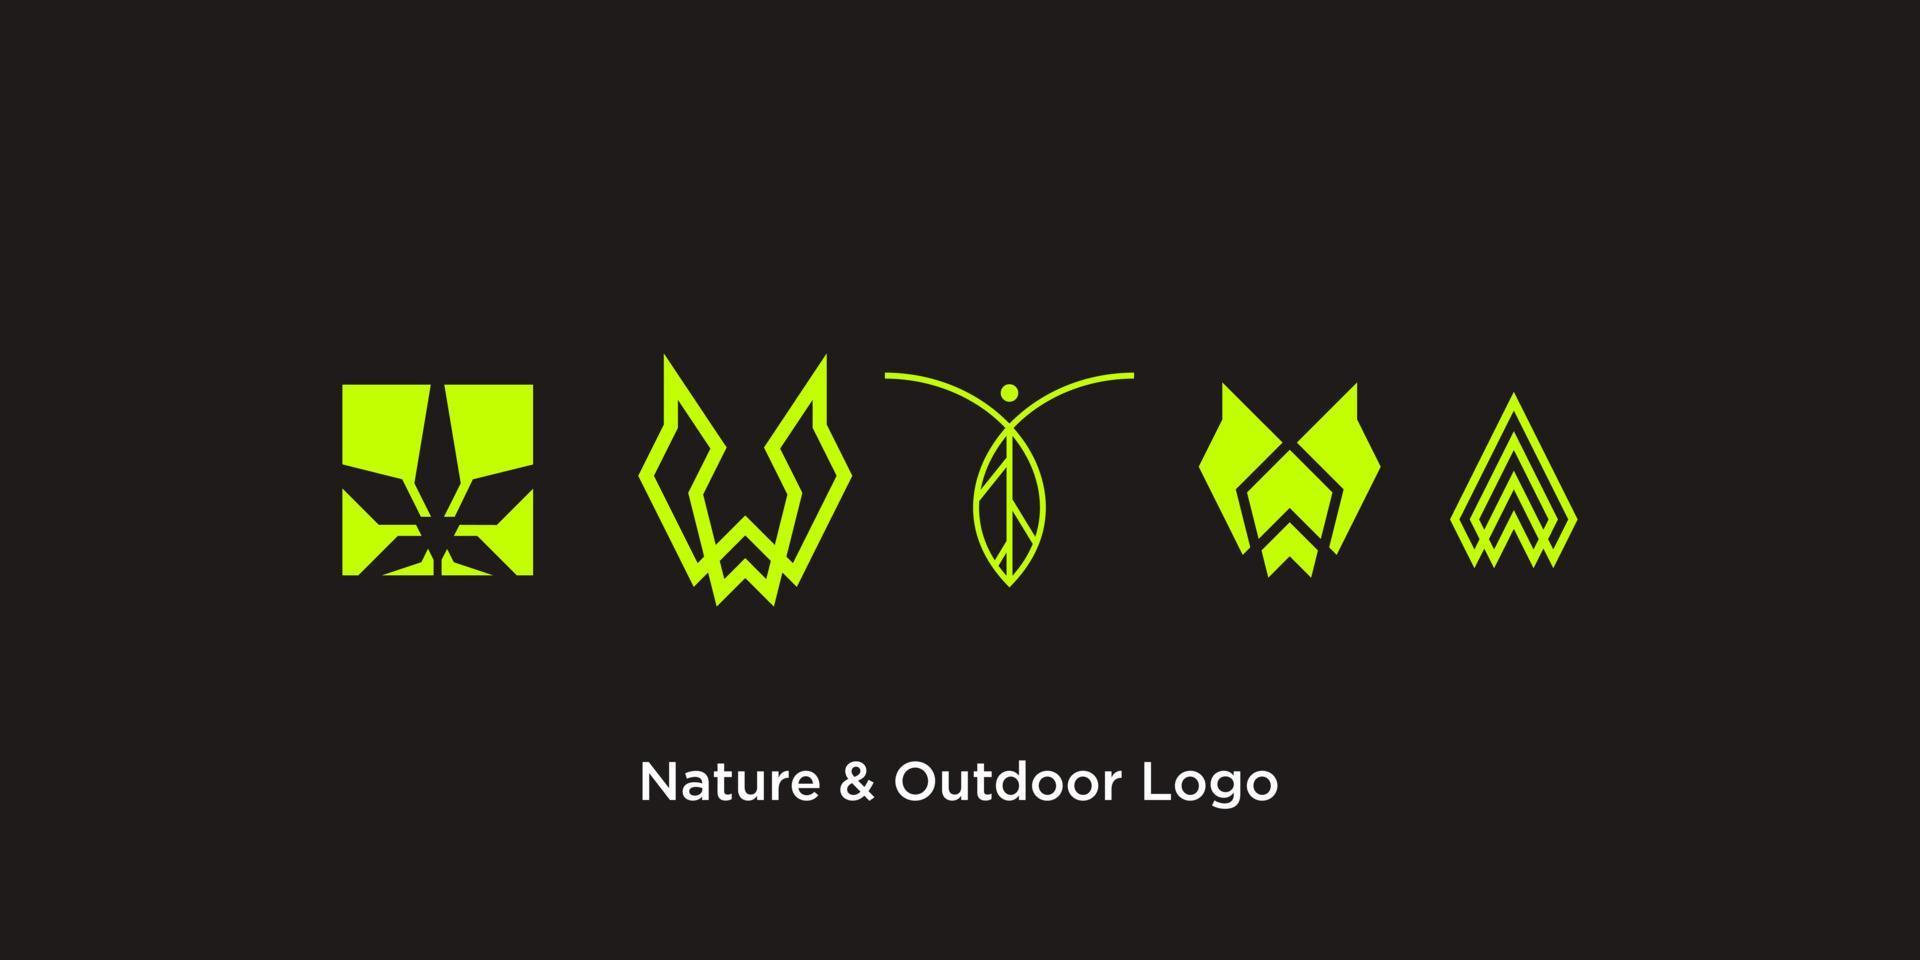 cuatro diseños de logotipos al aire libre en un fondo oscuro. vector